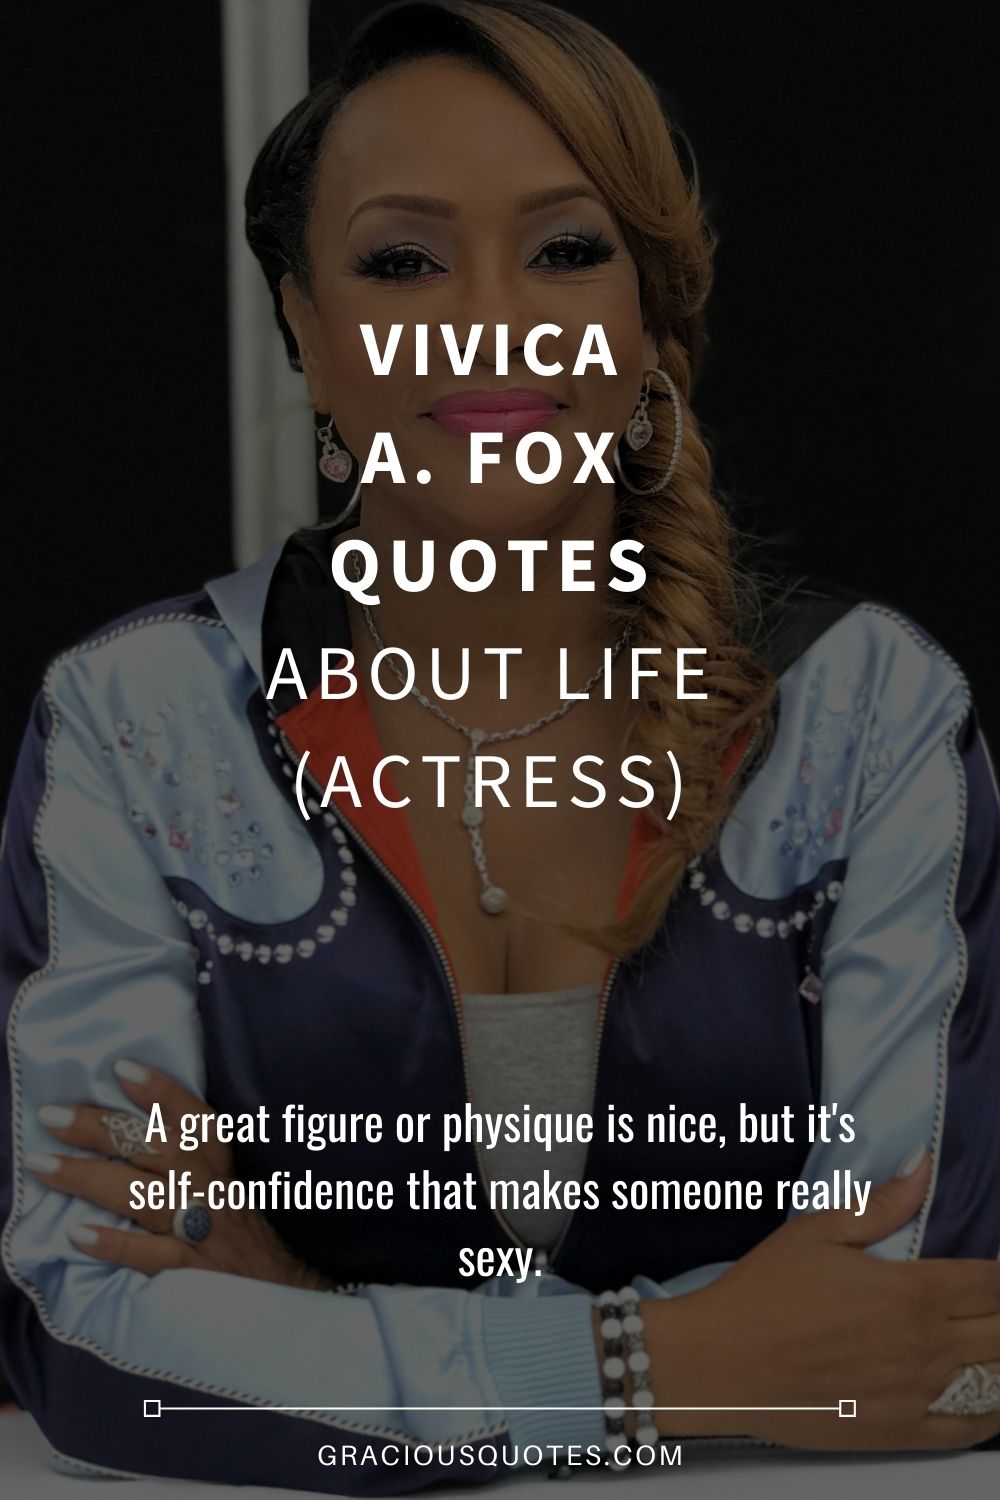 Vivica A. Fox Quotes About Life (ACTRESS) - Gracious Quotes